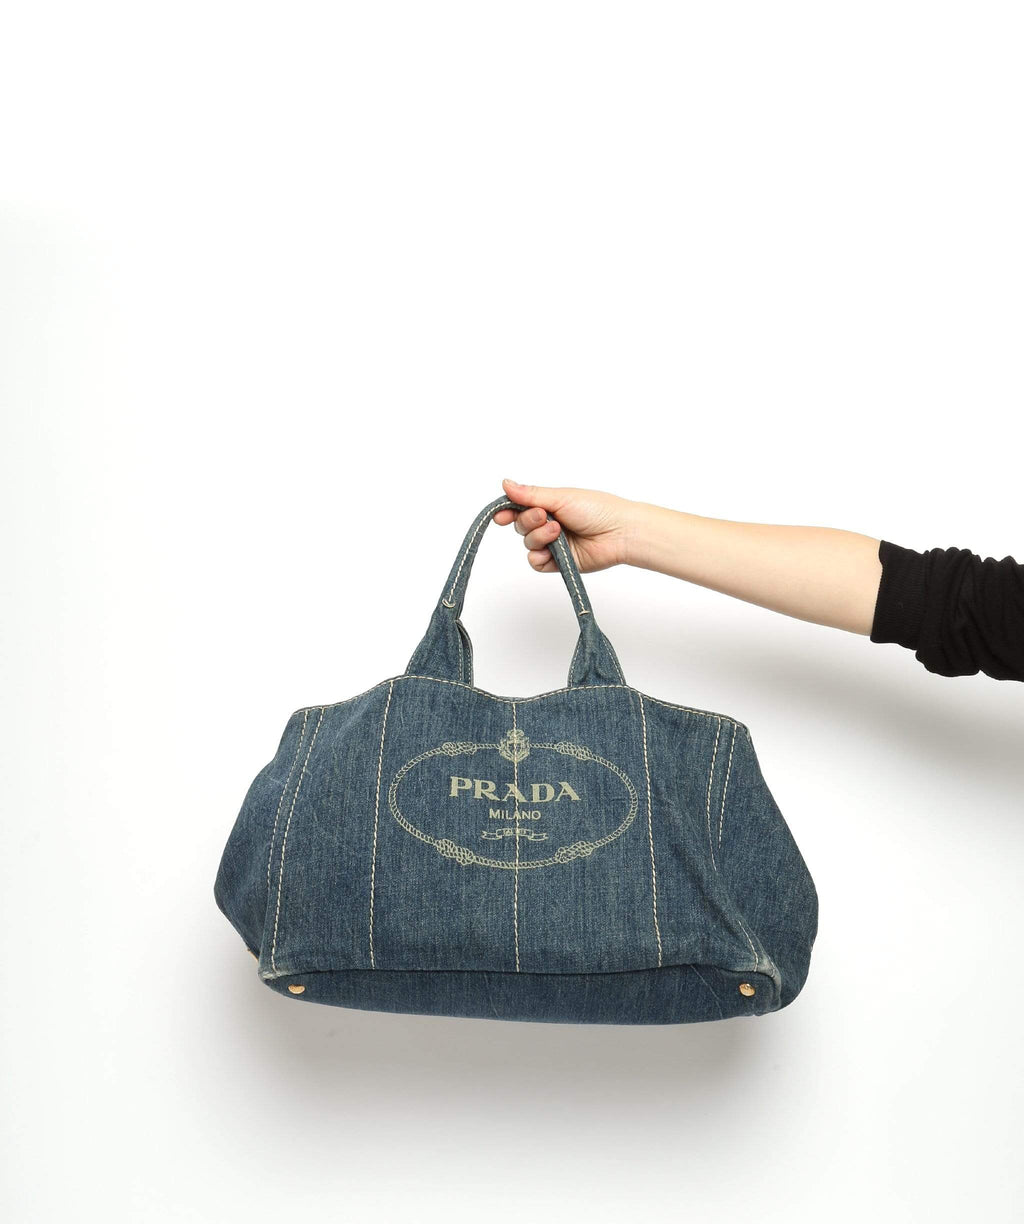 Prada Denim Ring Shoulder Bag - Black Shoulder Bags, Handbags - PRA765515 |  The RealReal